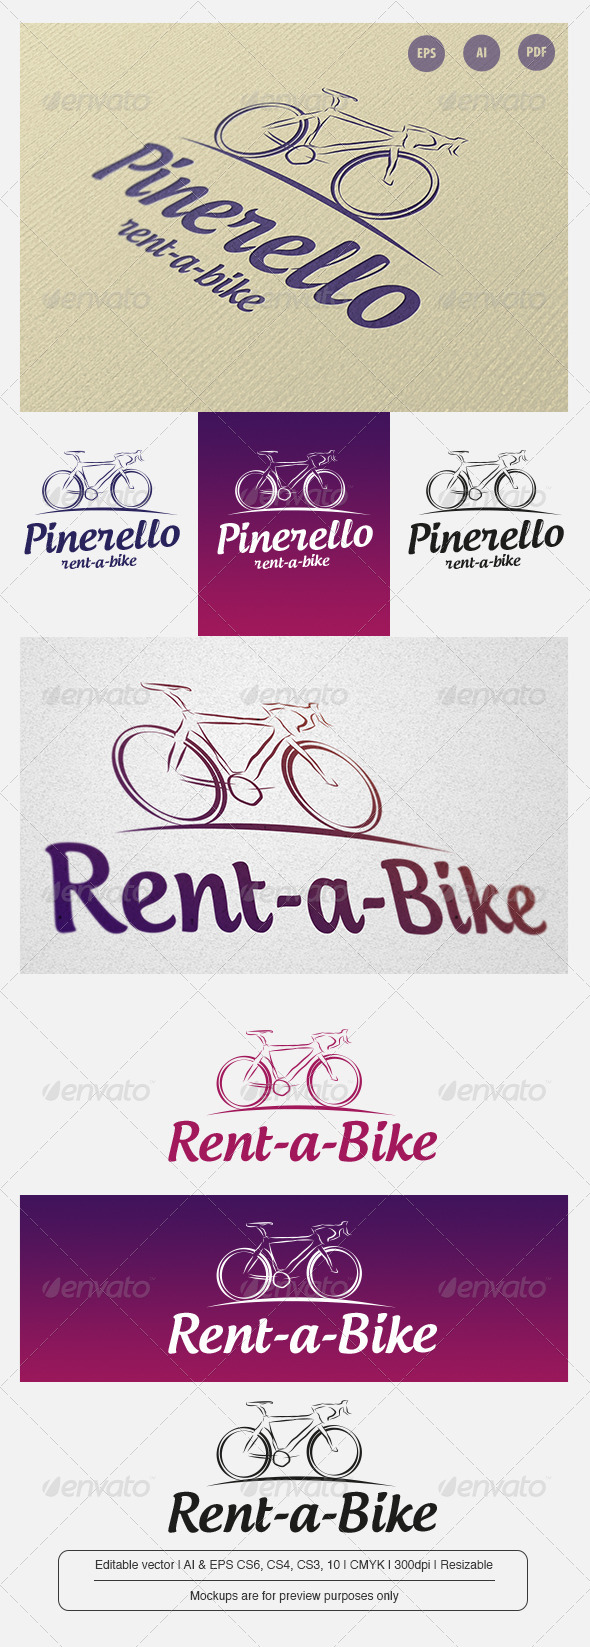 Pinerello - Rent a Bike